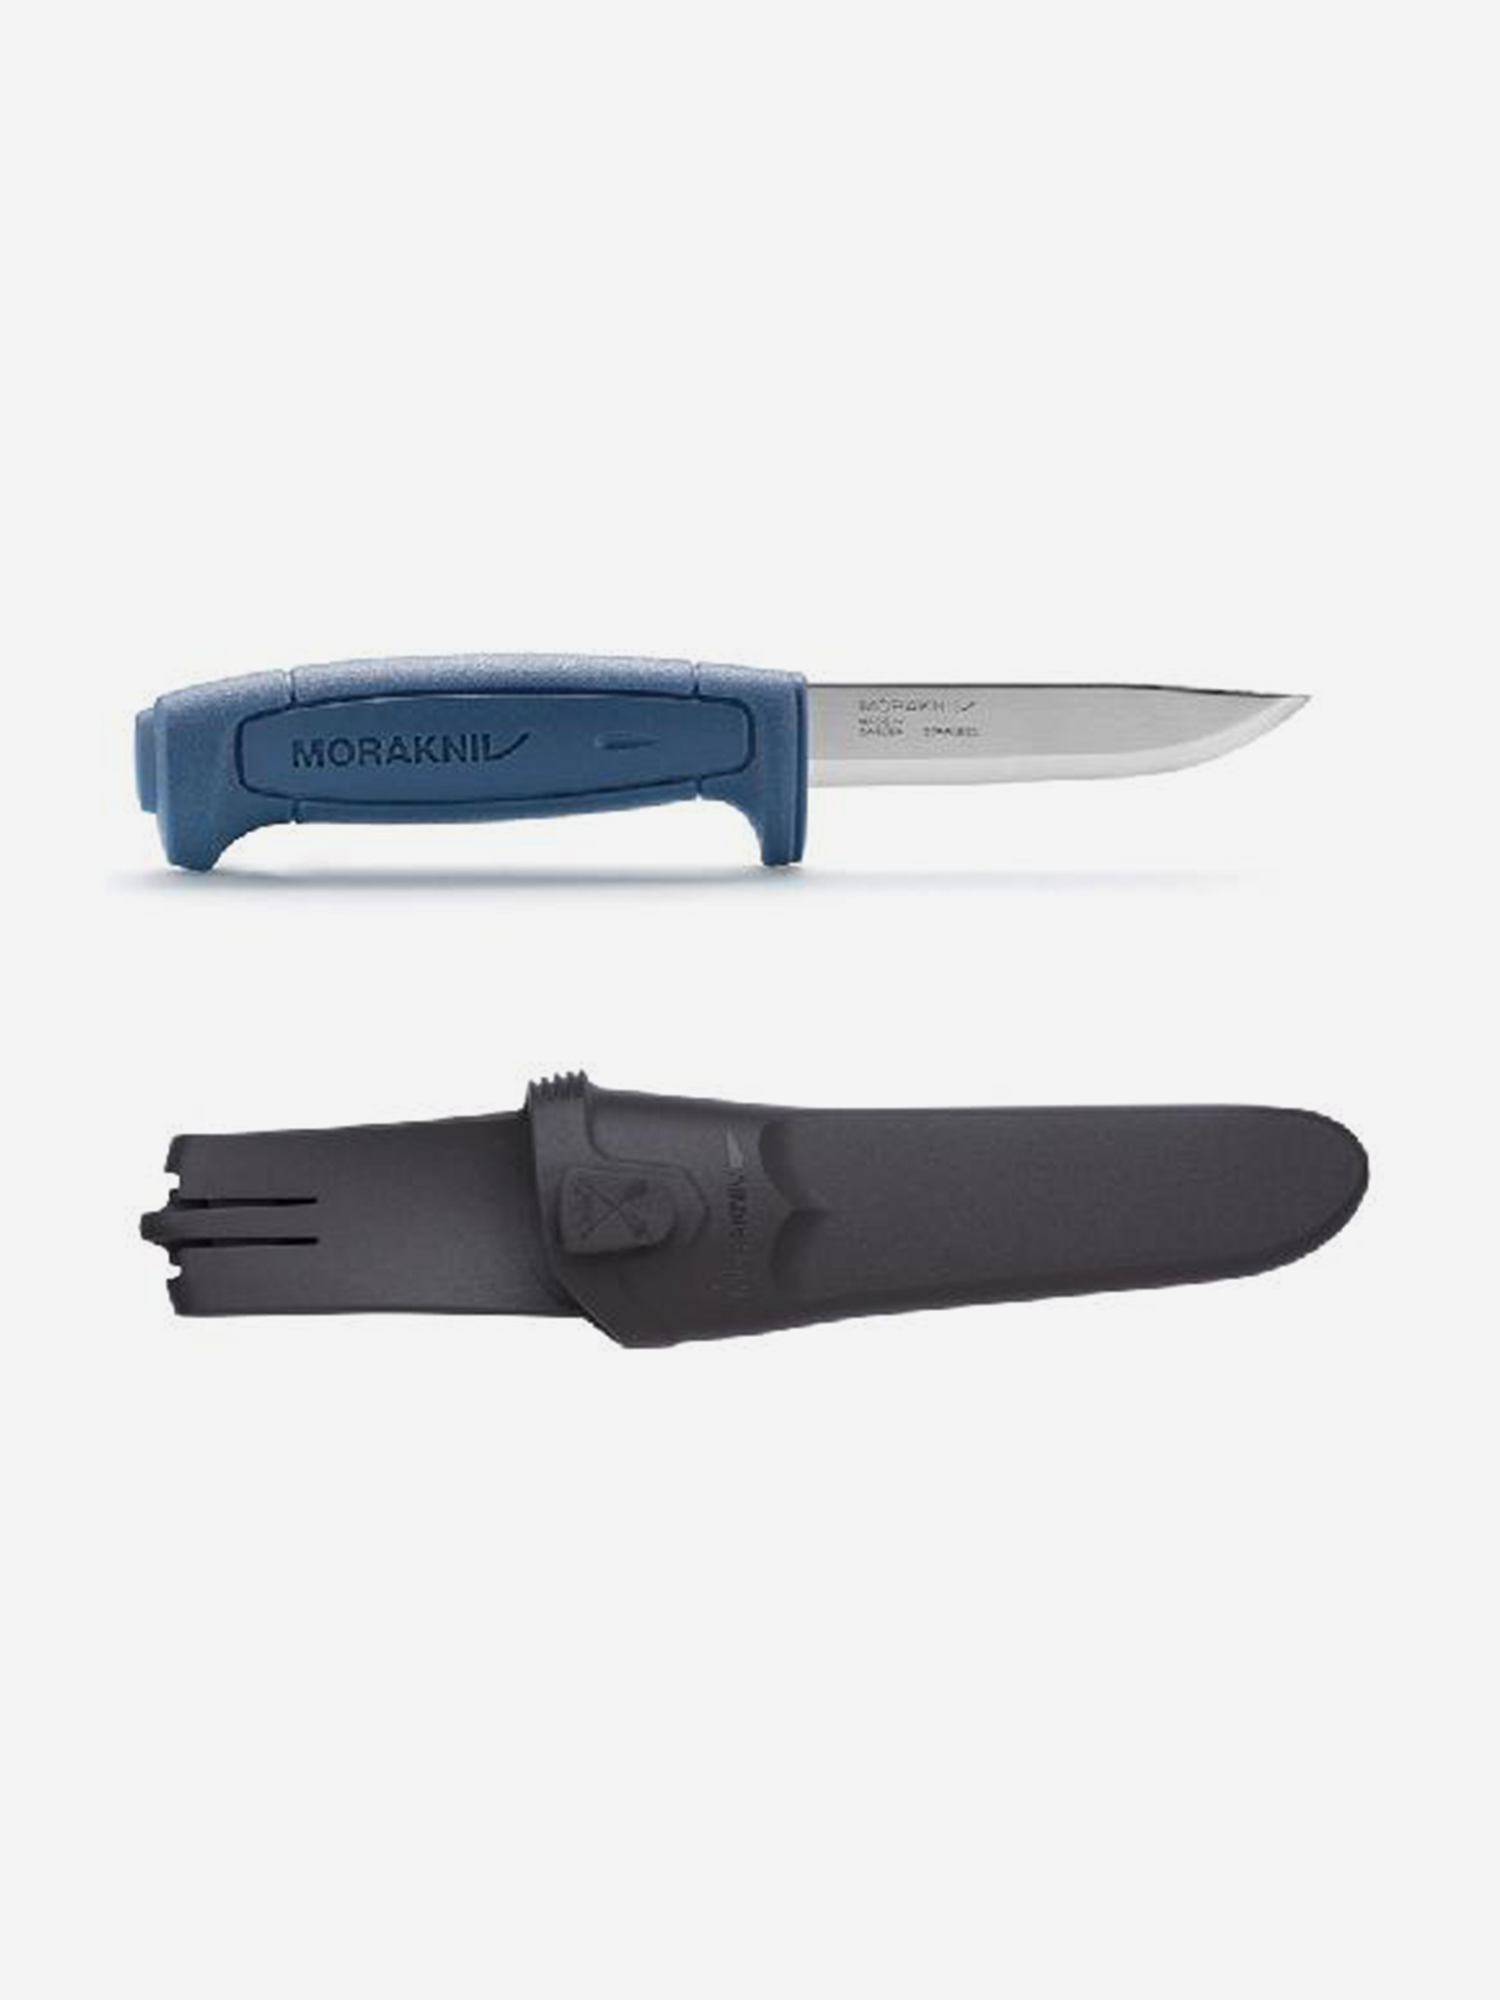 Нож Morakniv Basic 546, нержавеющая сталь, синяя ручка, 12241, Синий нож morakniv fishing comfort fillet 155 нержавеющая сталь 13869